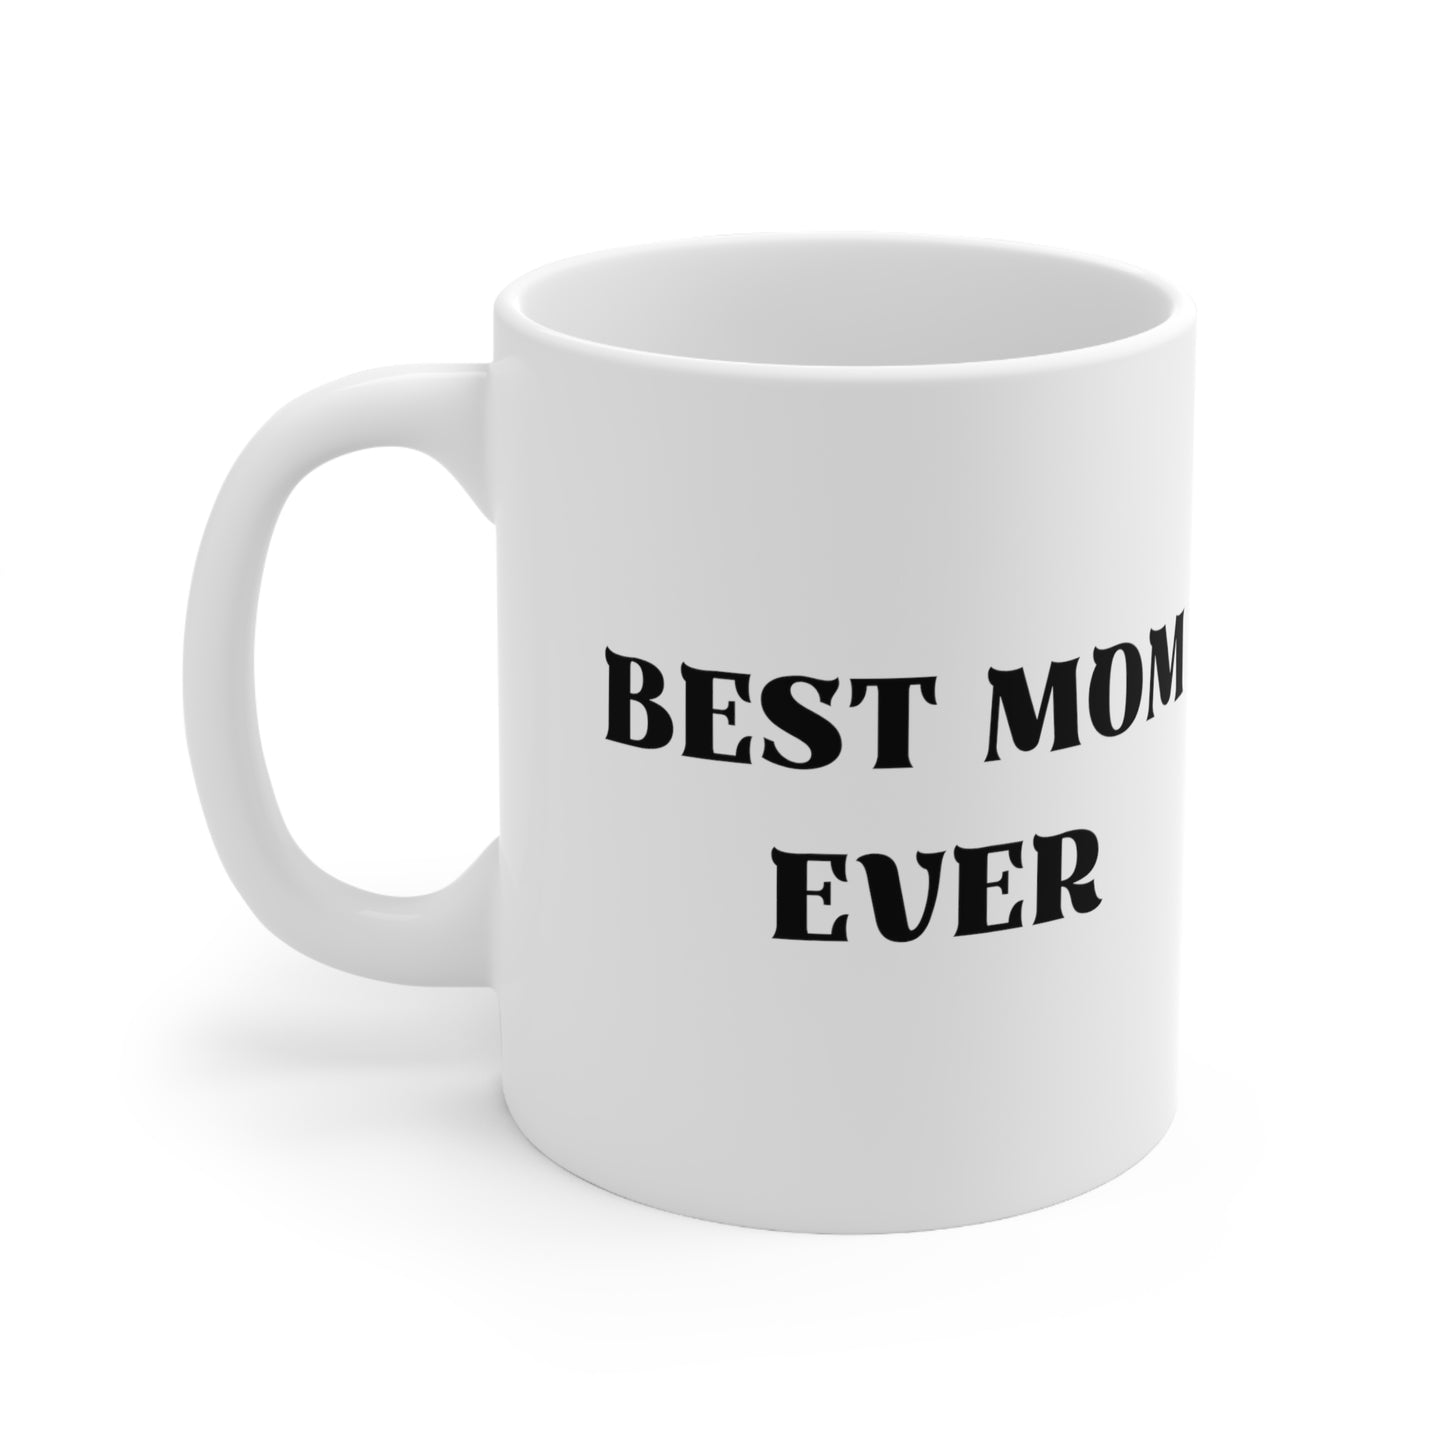 Best Mom Ever, Birthday Ceramic Mug 11oz, White